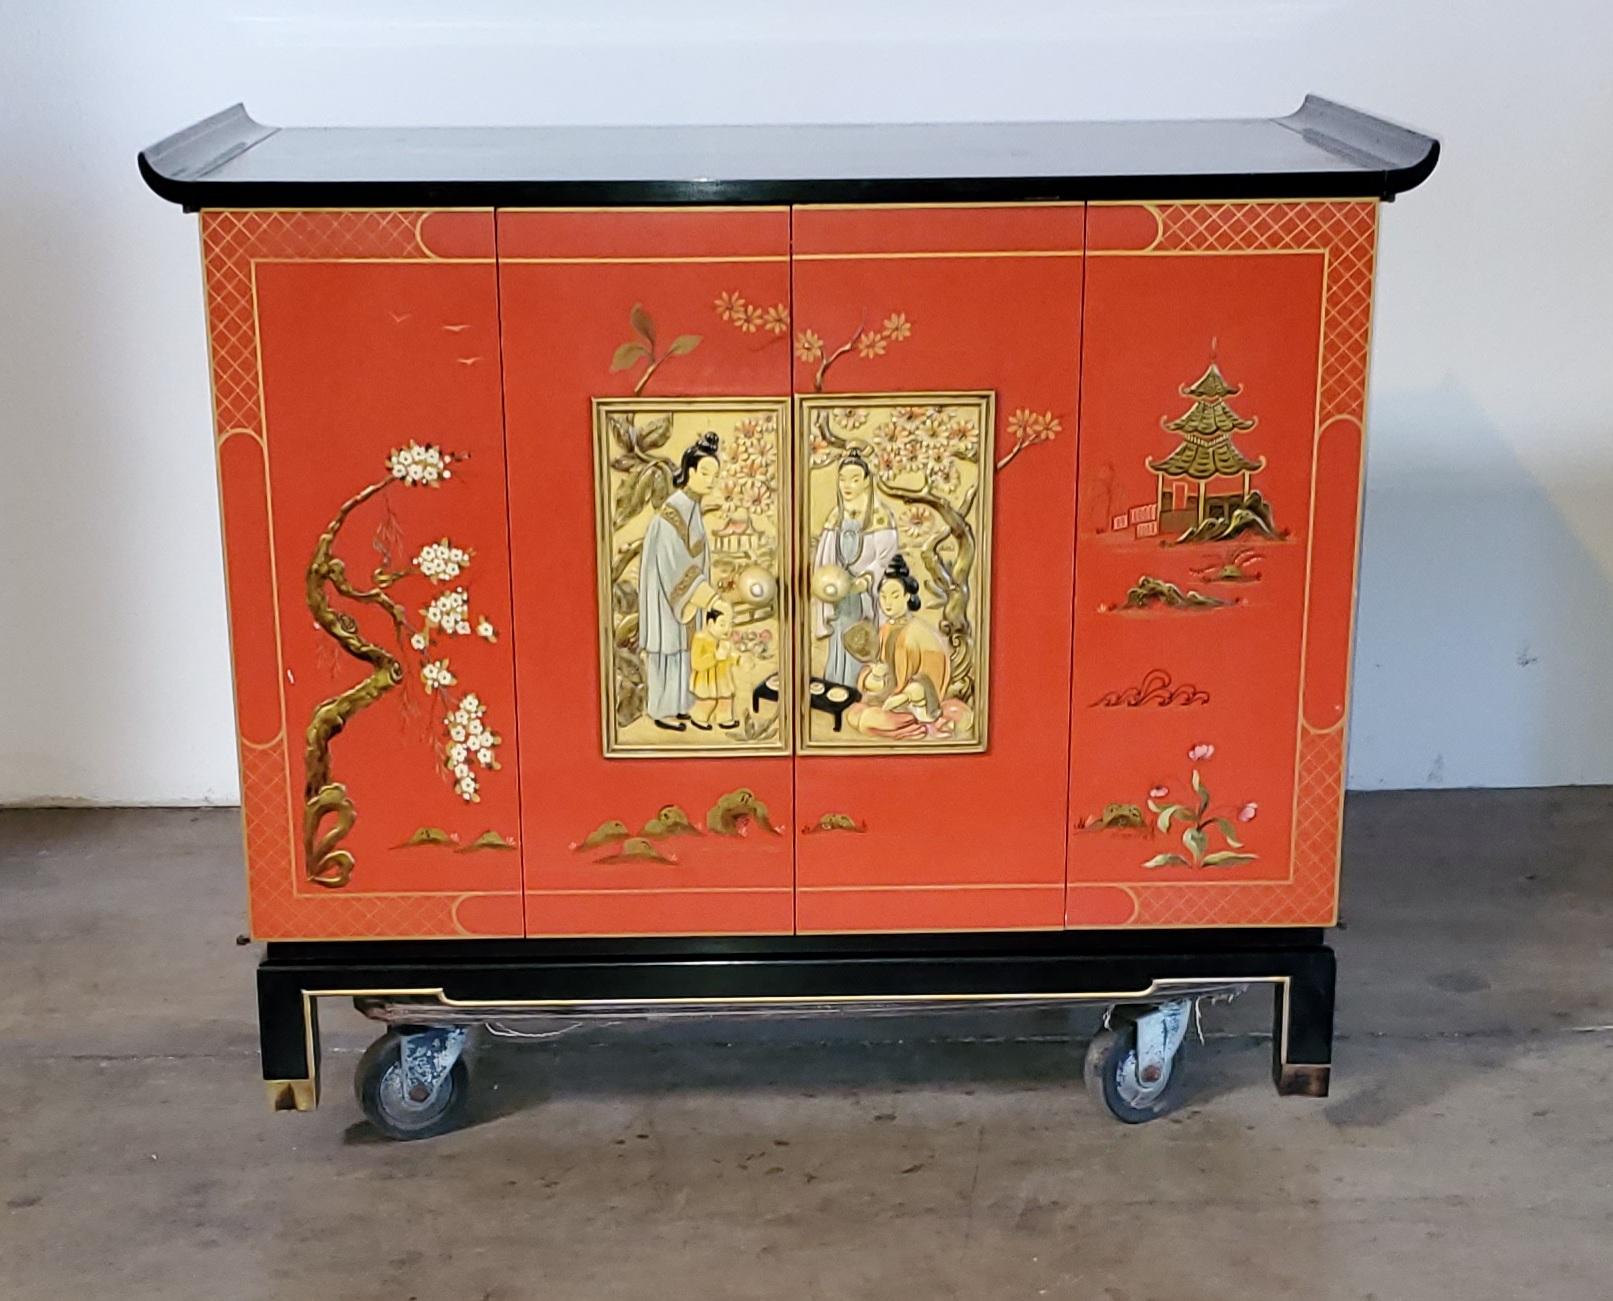 Meuble oriental moderne asiatique vintage avec TV colorée Zenith des années 1960.

Ce meuble moderne asiatique vintage présente un design oriental orné.

Le motif oriental des portes d'entrée est un magnifique relief asiatique.

Le meuble